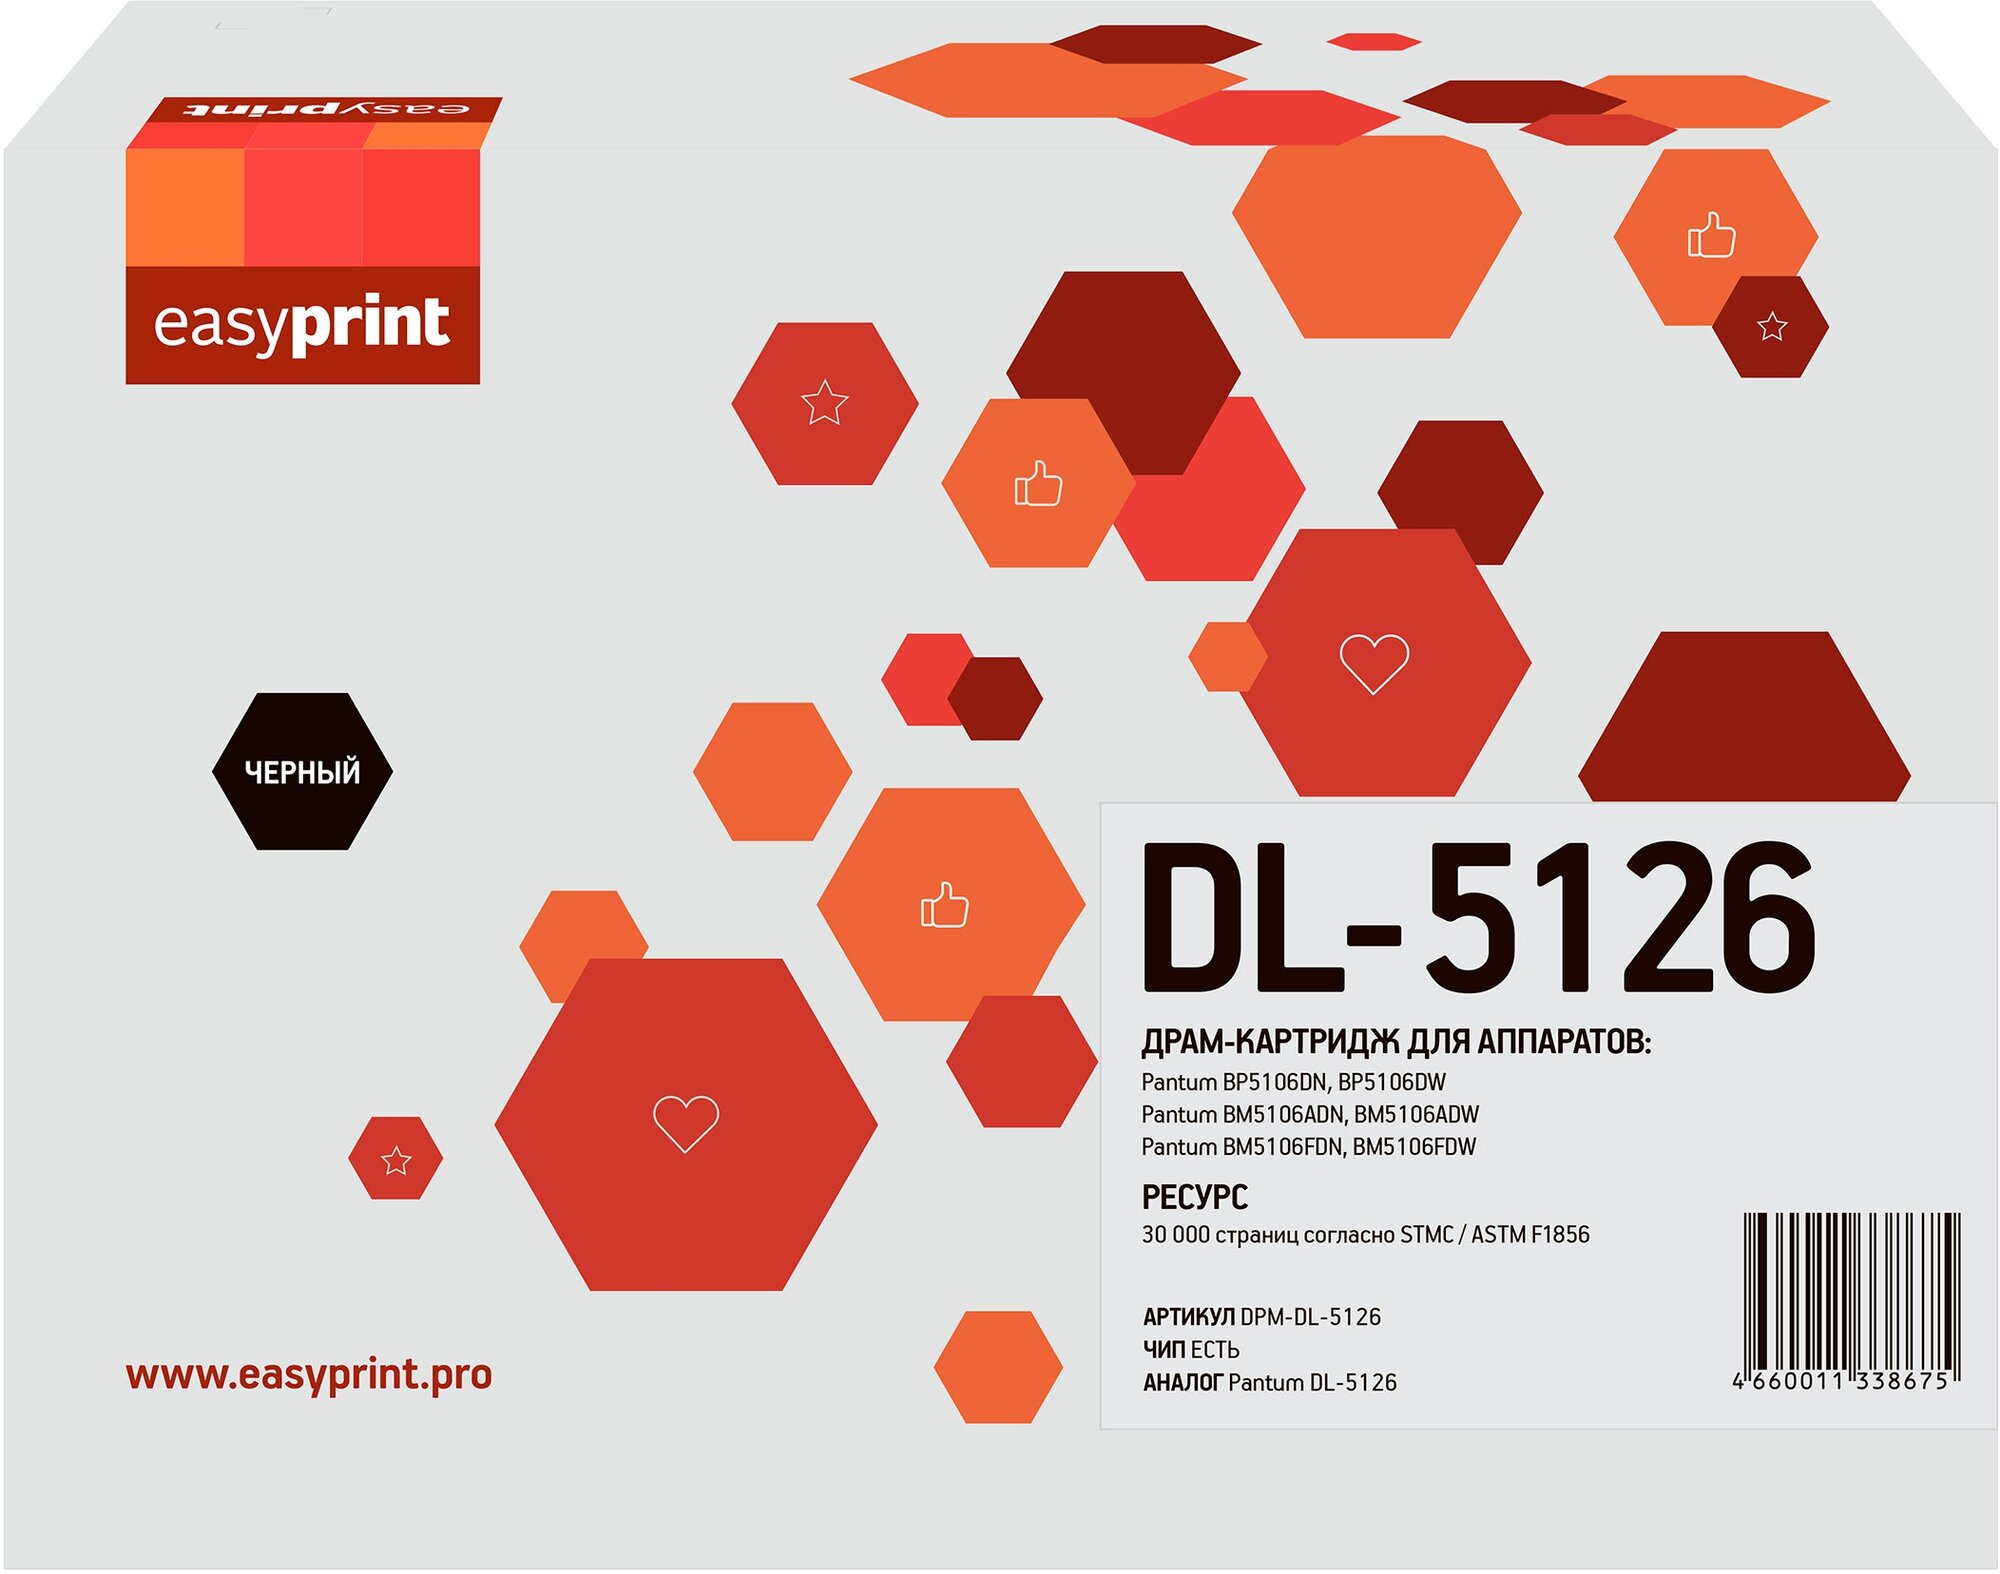 Драм-картридж EasyPrint DL-5126 черный совместимый с принтером Pantum (DPM-DL-5126)